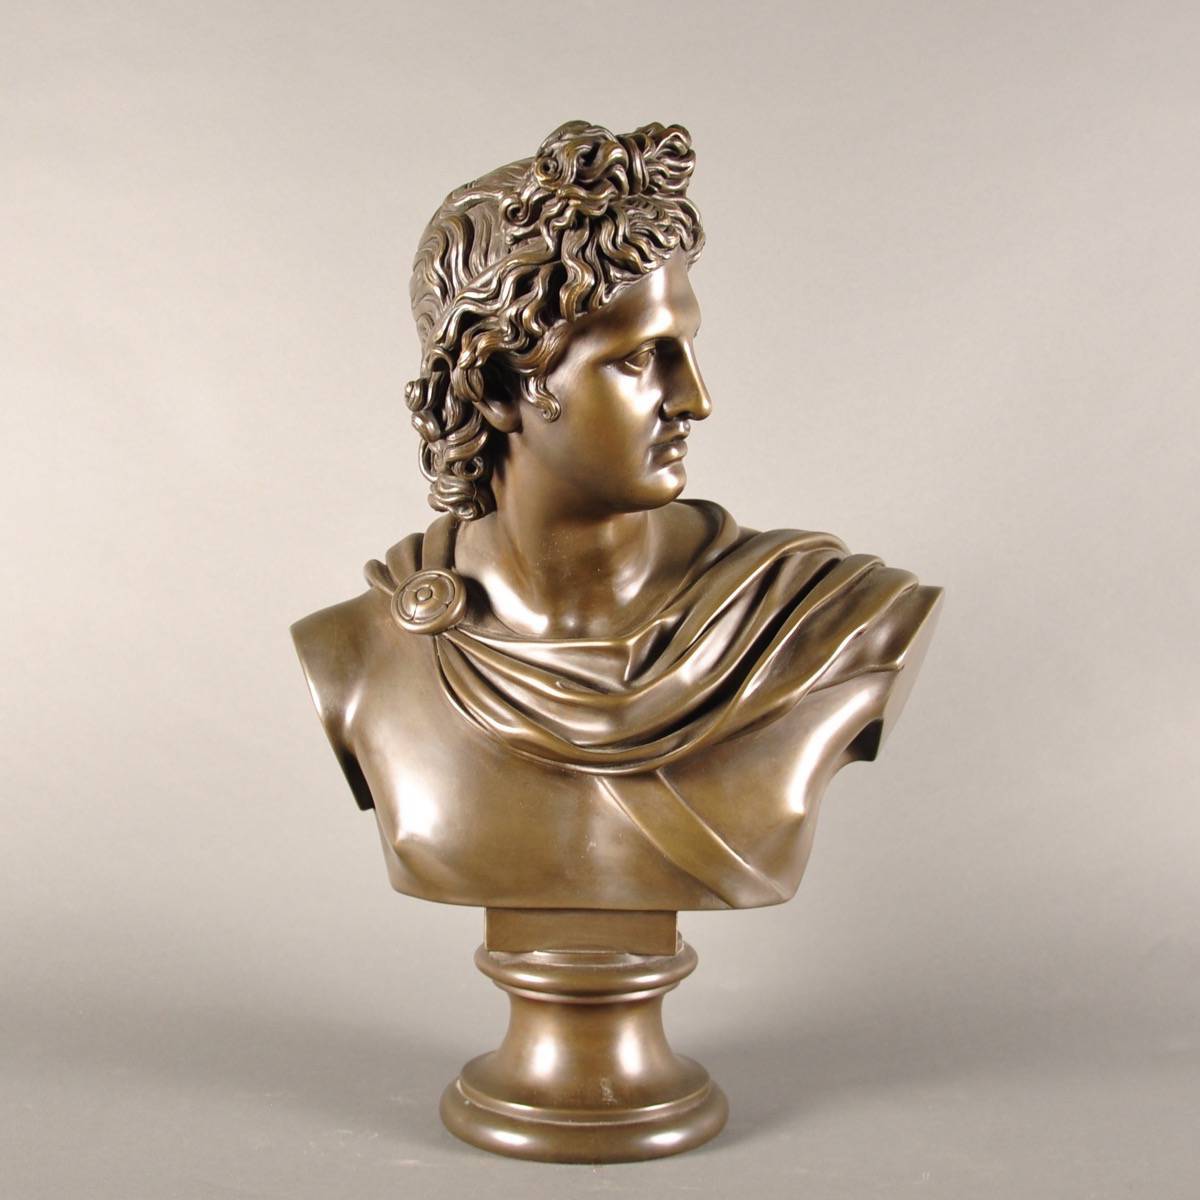 ການຕົບແຕ່ງຕາຕະລາງຮູບປັ້ນໂລຫະທີ່ມີຊີວິດຂະຫນາດໃຫຍ່ bronze ຮູບປັ້ນ Pythian Apollo